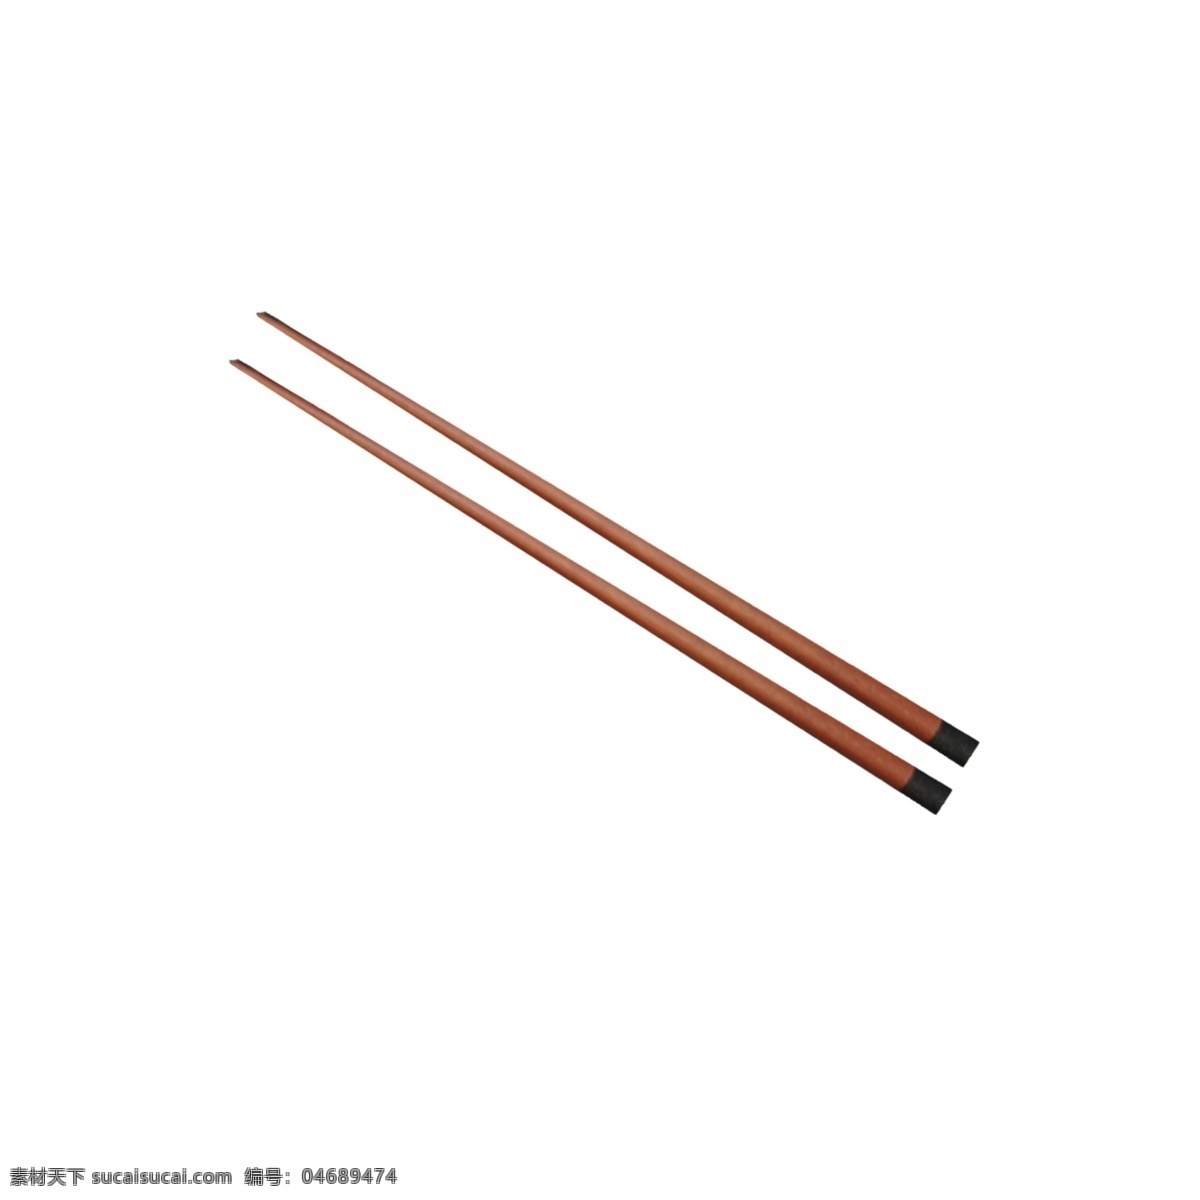 木质筷子 筷子 实物筷子 餐具 实物 实物免扣 实物下载